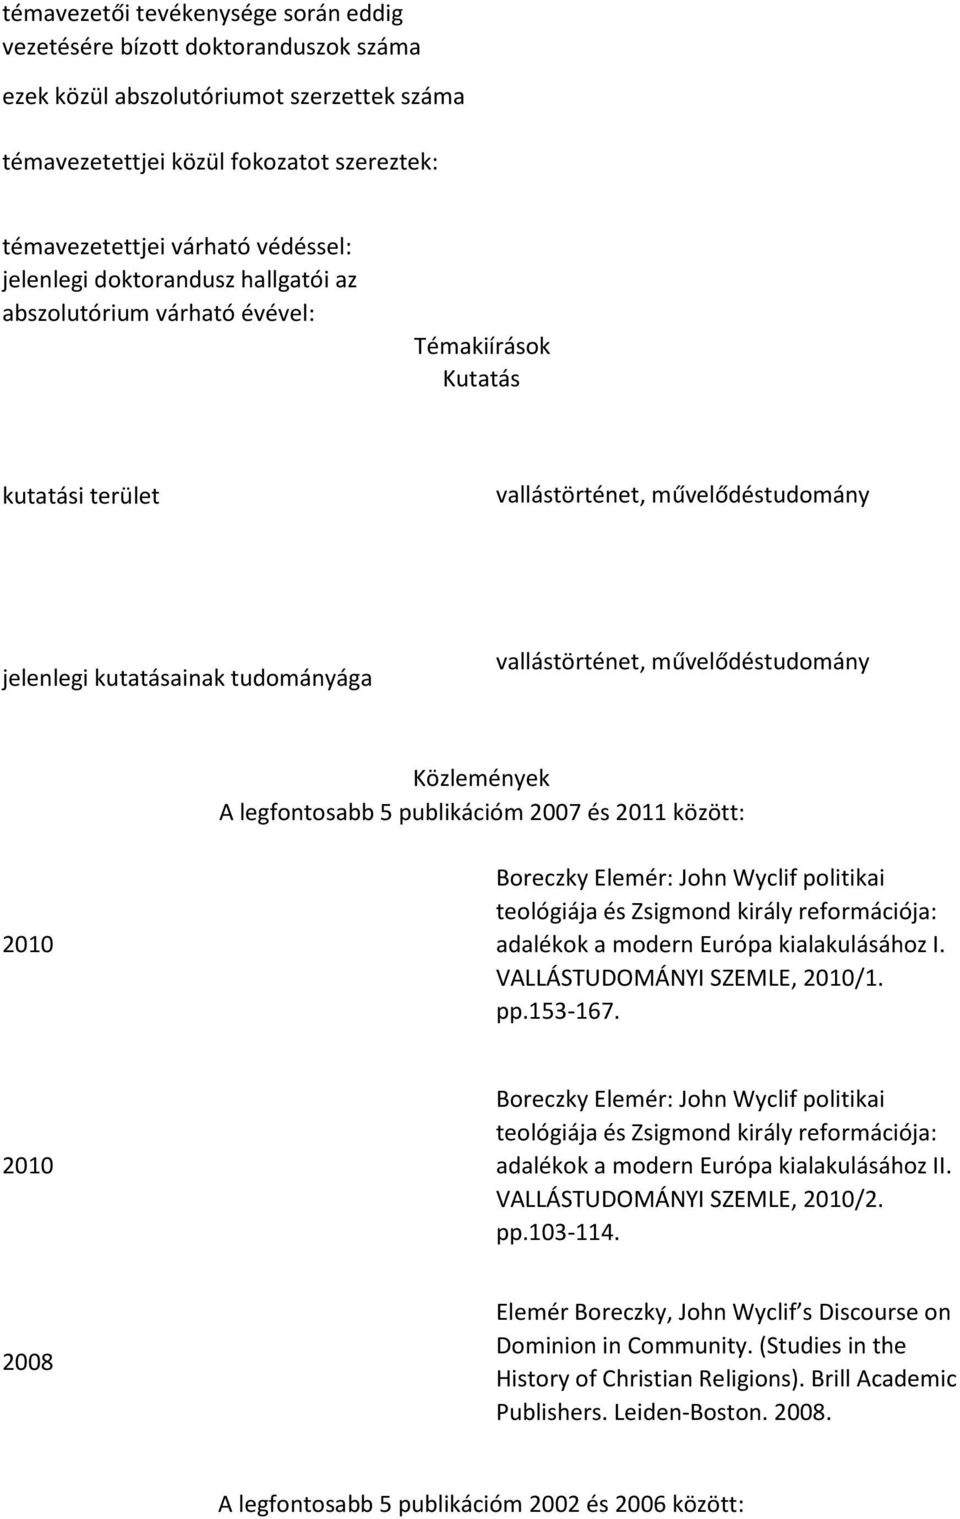 Közlemények A legfntsabb 5 publikációm 2007 és 2011 között: 2010 Breczky Elemér: Jhn Wyclif plitikai telógiája és Zsigmnd király refrmációja: adalékk a mdern Európa kialakulásáhz I.